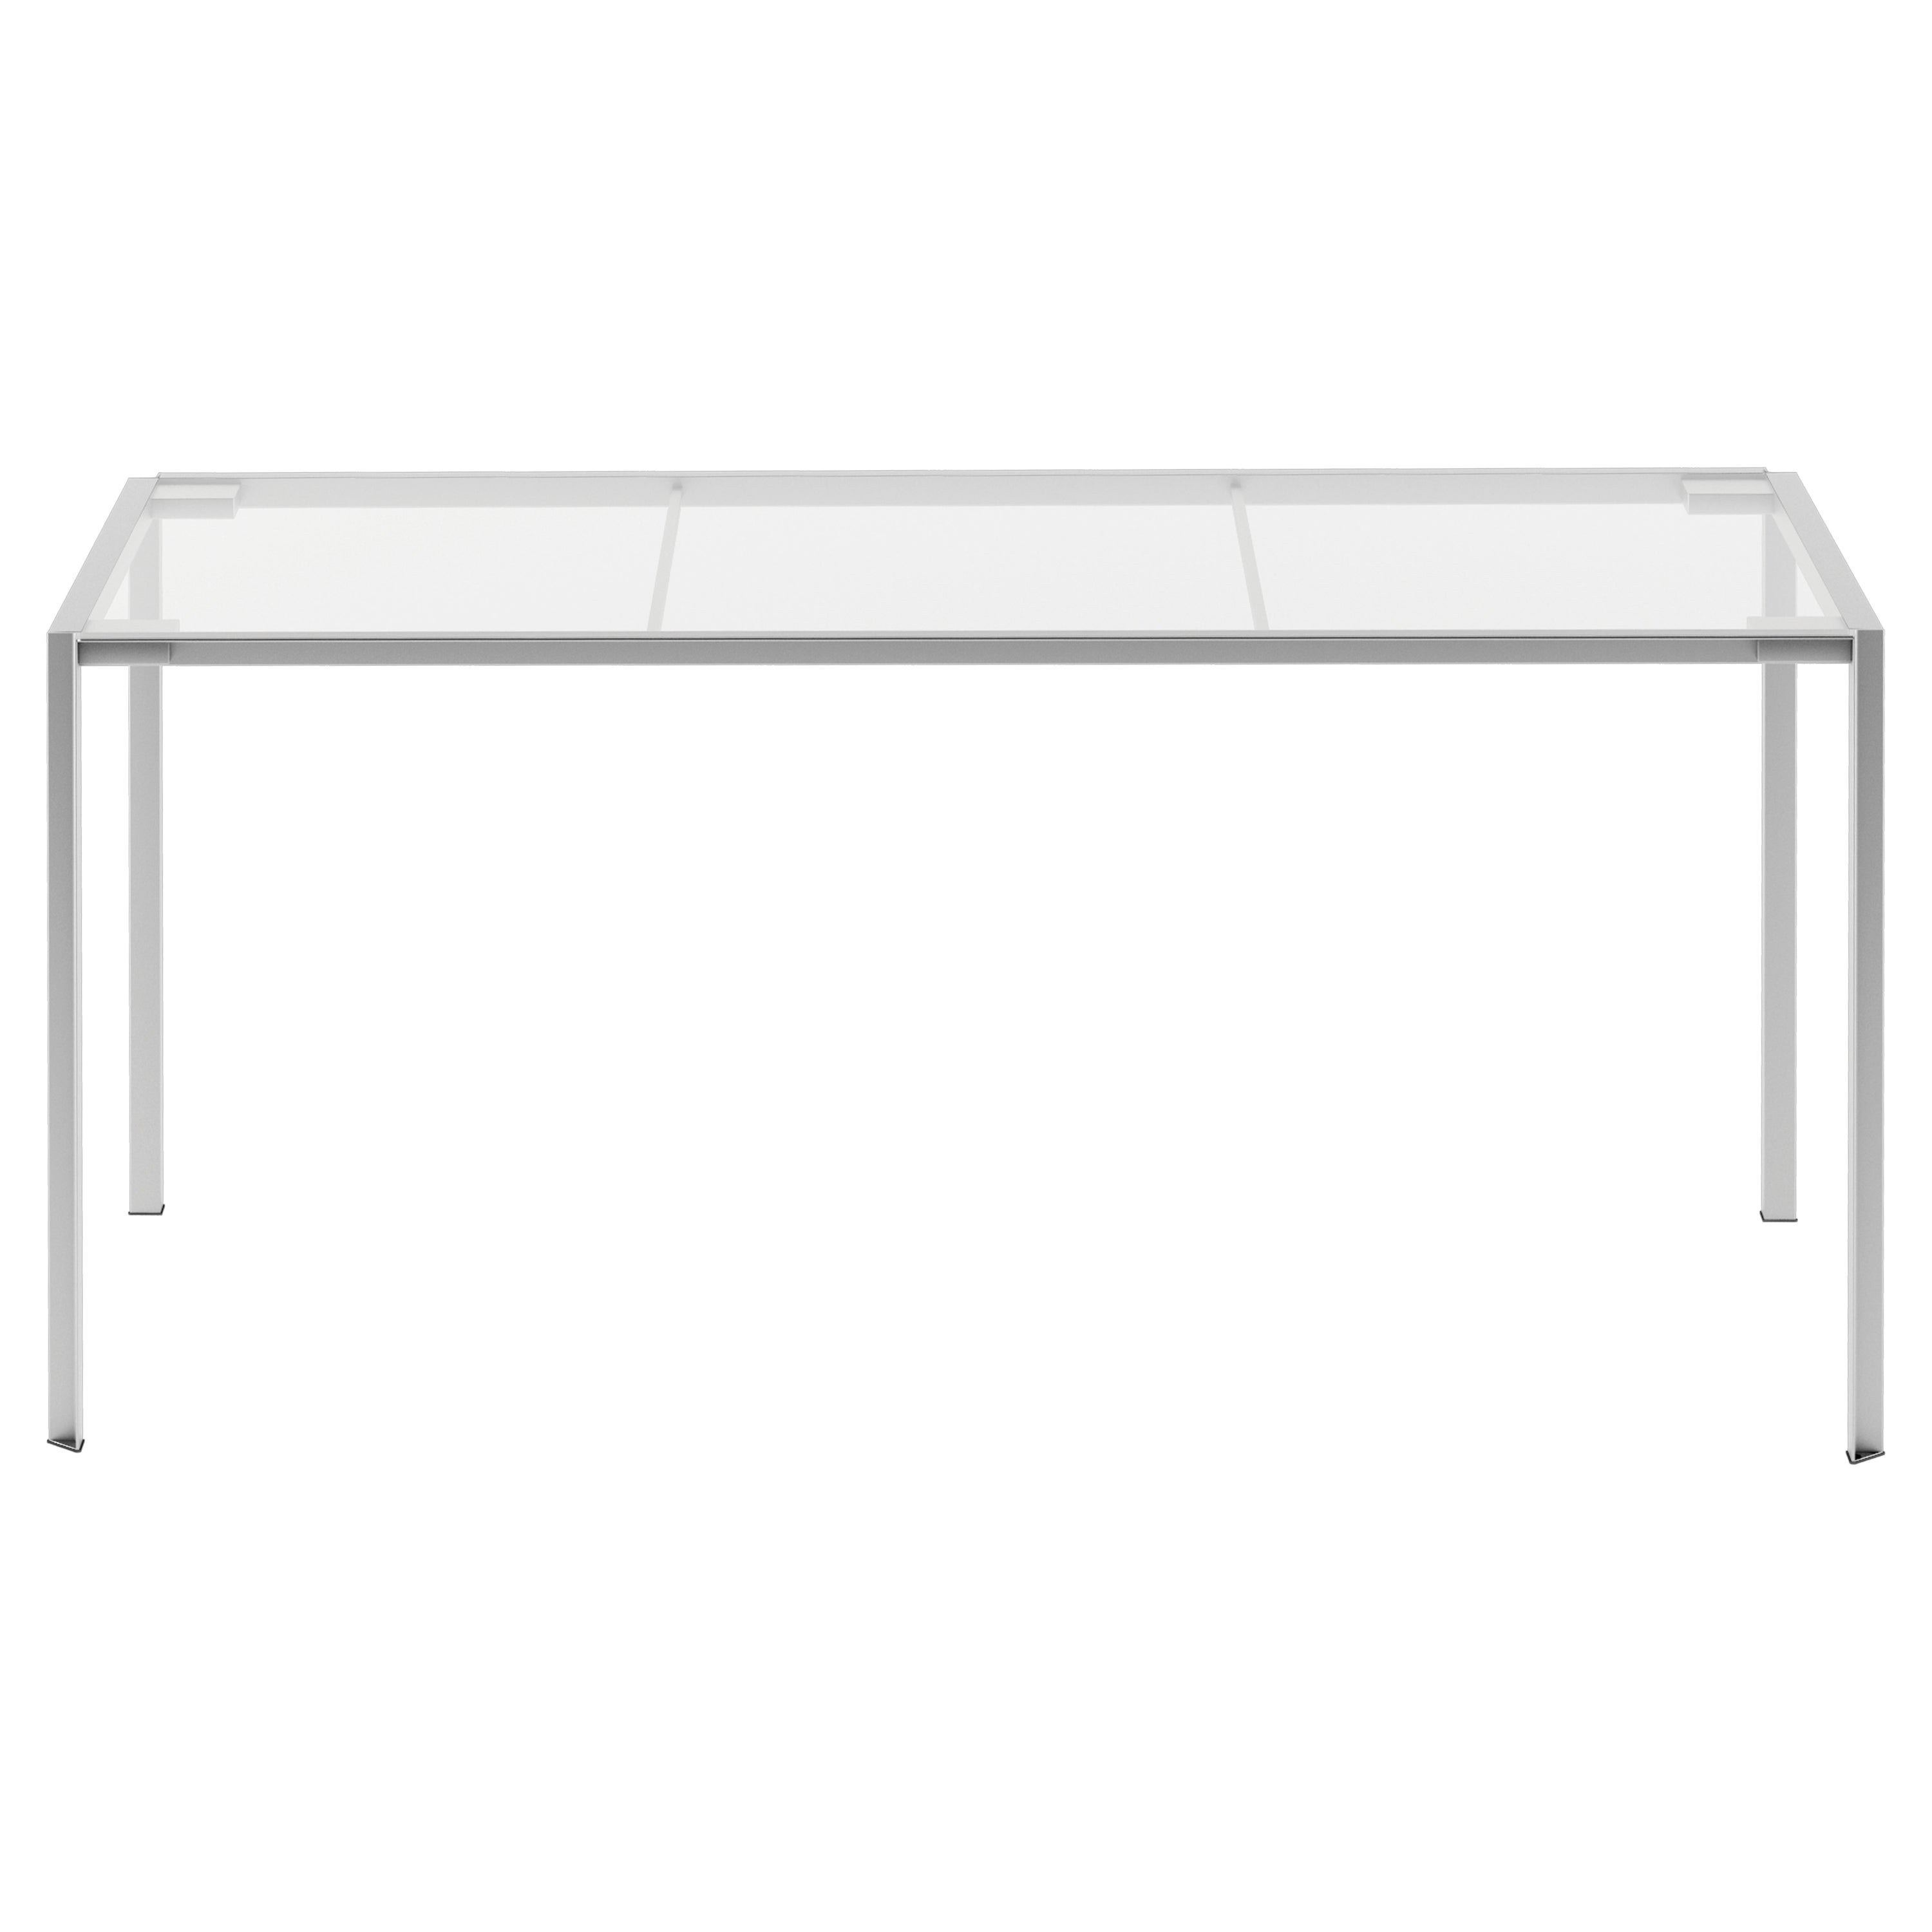 Table Alias 218_O verte avec cadre en acier inoxydable brossé et plateau en verre